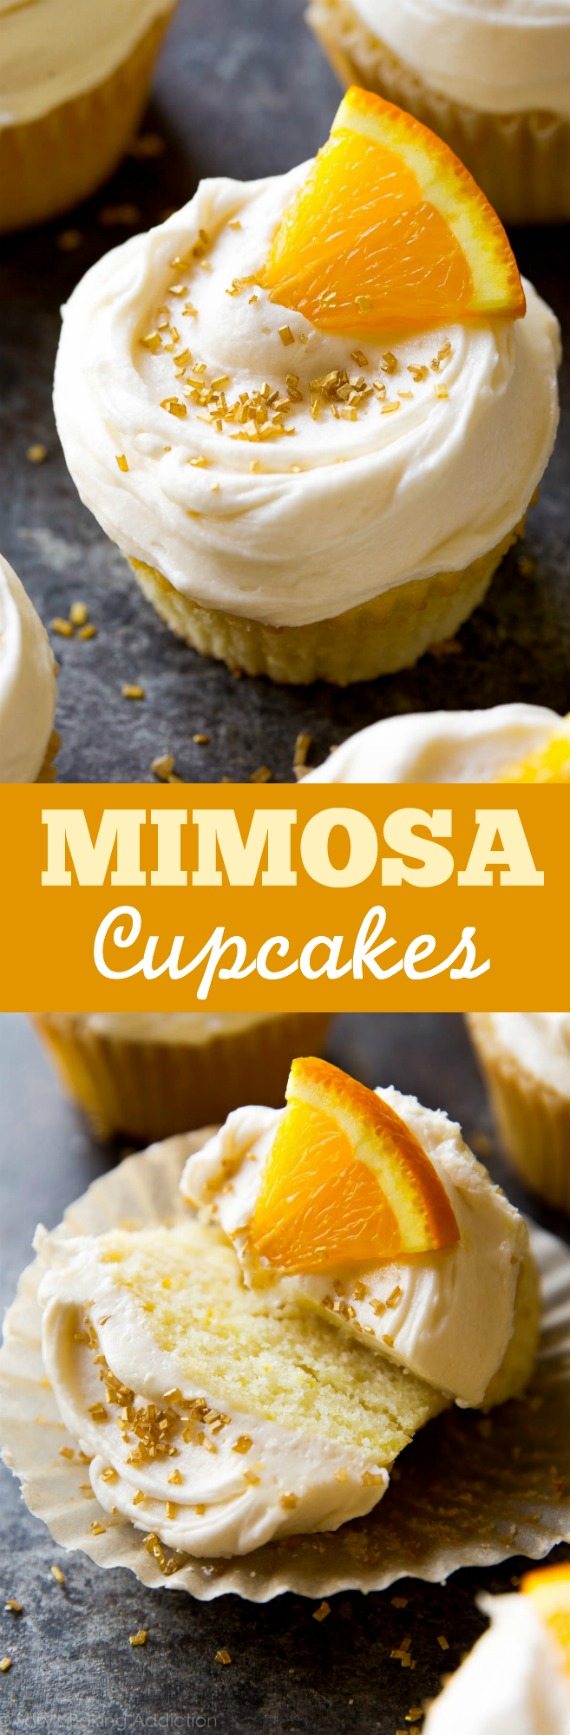 À votre santé! Cupcakes mimosa mous et moelleux avec glaçage au champagne sur sallysbakingaddiction.com